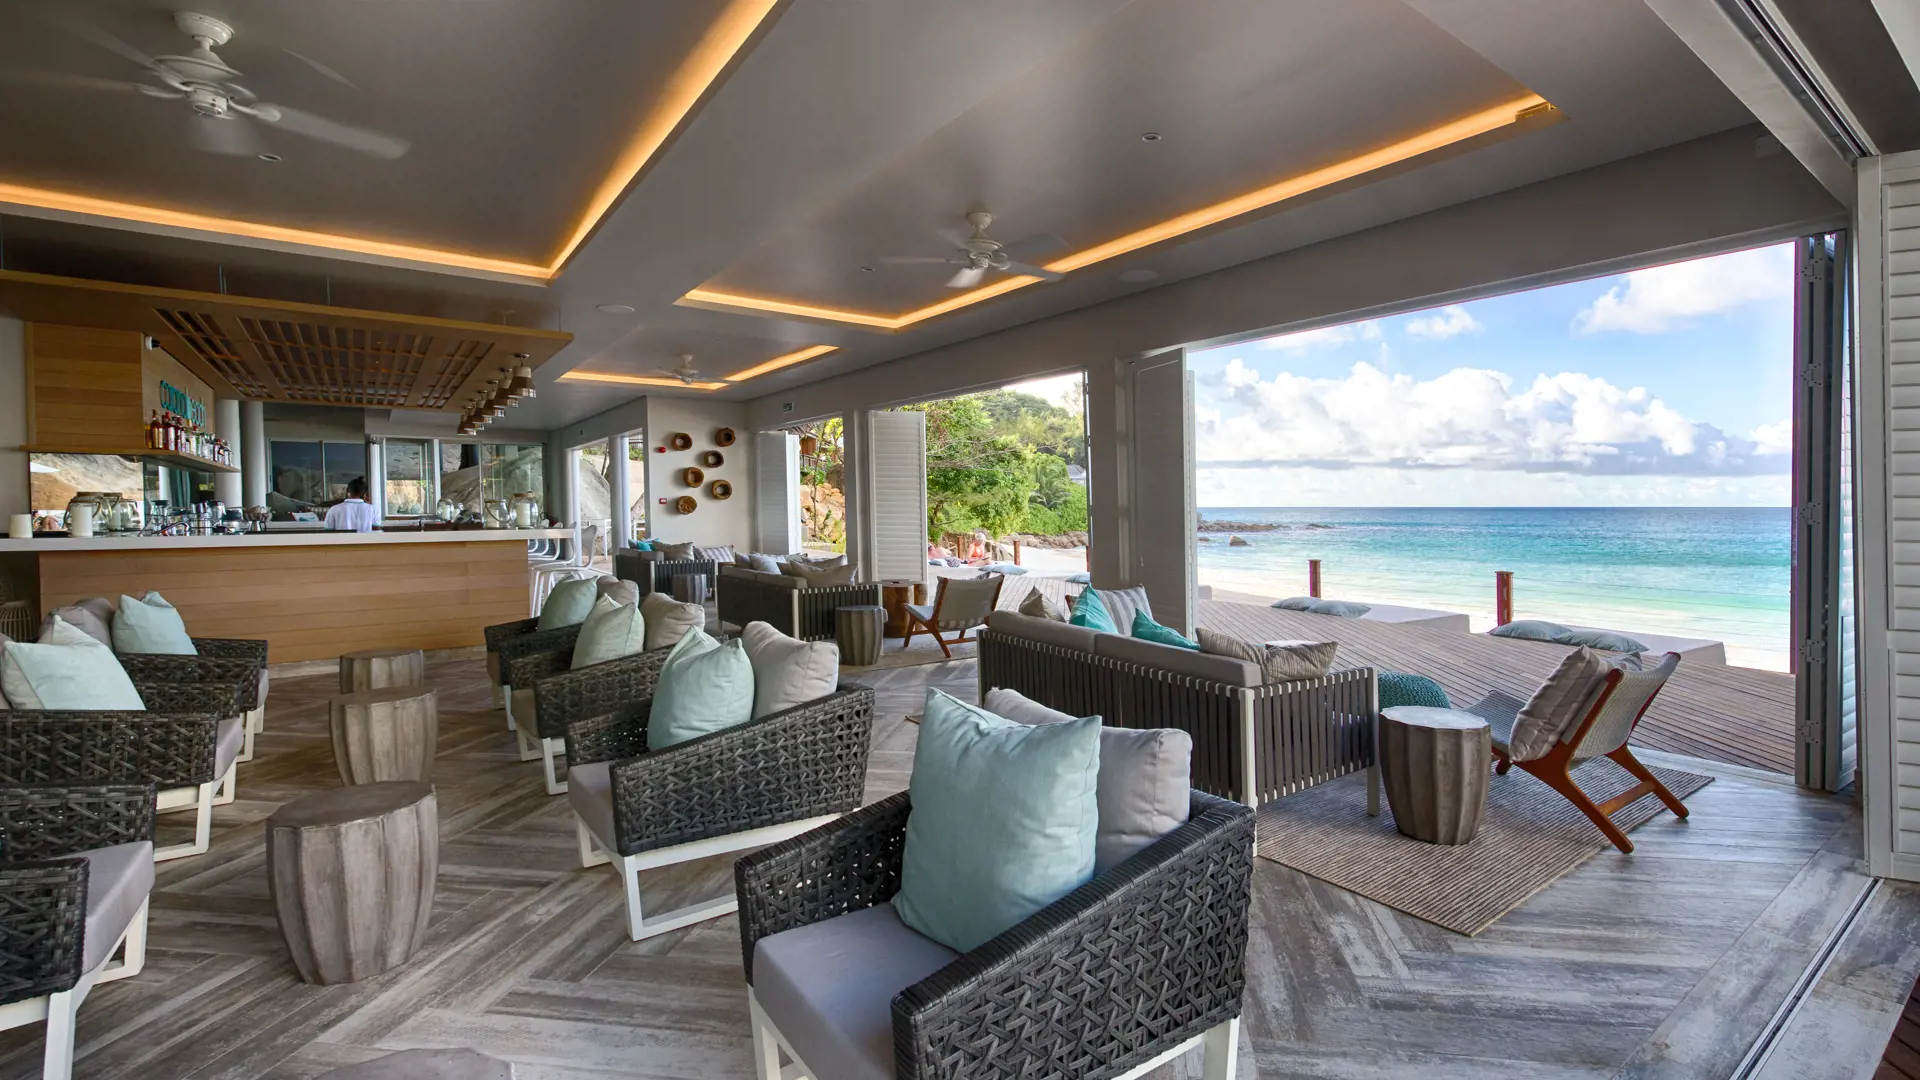 STRANDBAR - I hotellets strandbar kan I nyde en kølig drink og udsigten over det rolige hav.